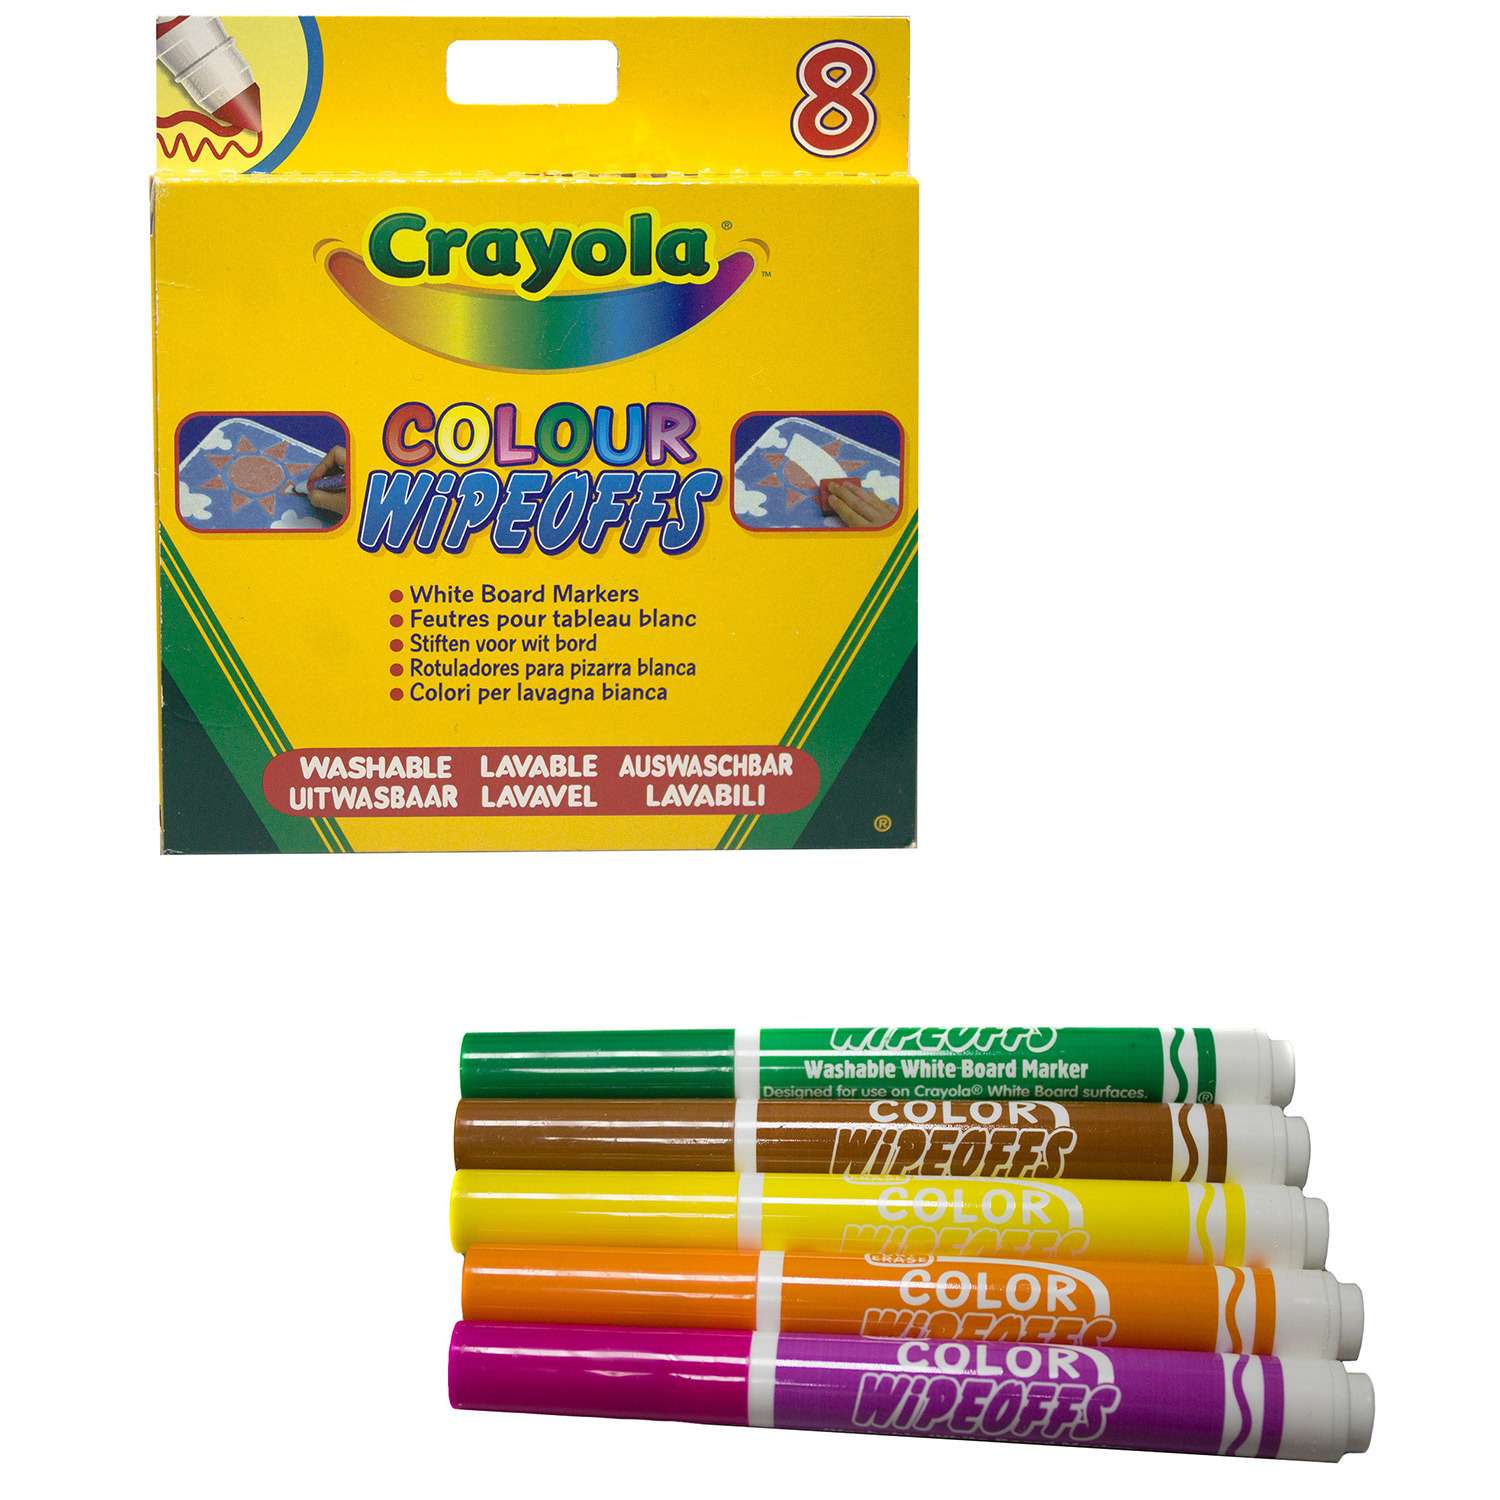 фломастеры для письма на доске Crayola 8 цветов радуги - фото 3